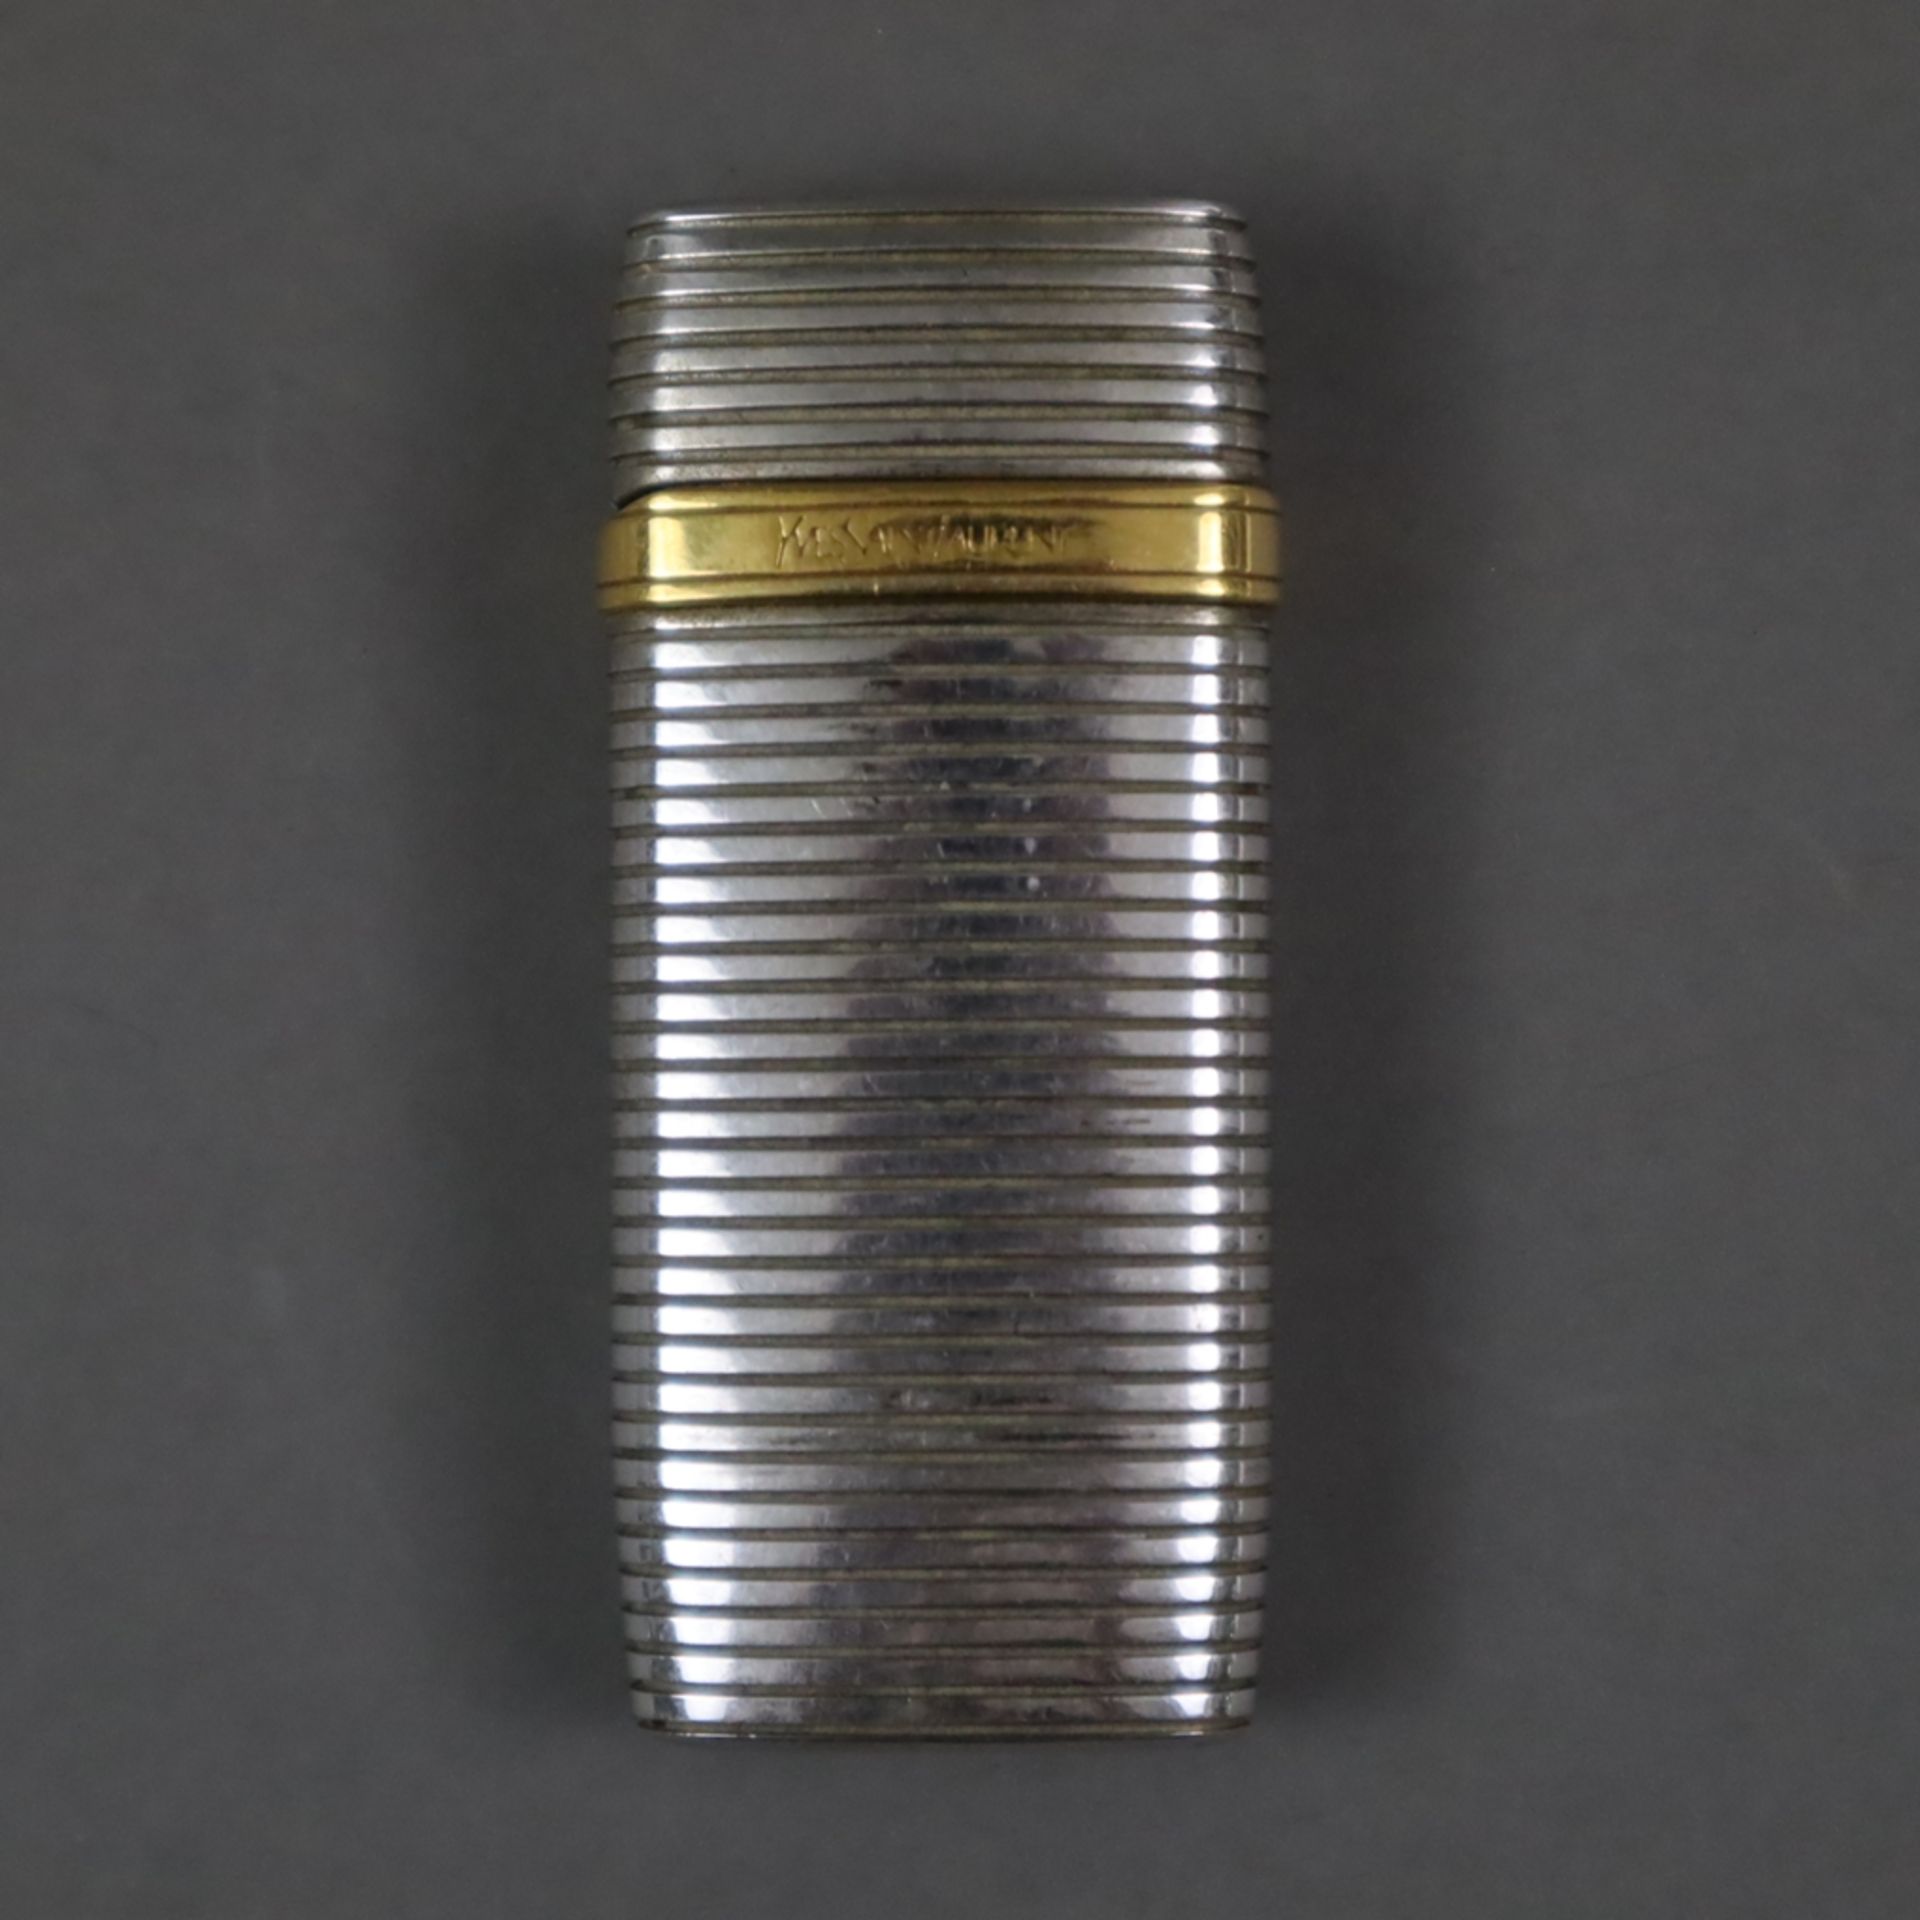 Feuerzeug - Yves Saint Laurent, gerilltes Metallgehäuse mit goldfarbenem Logodetail, Deckel innen g